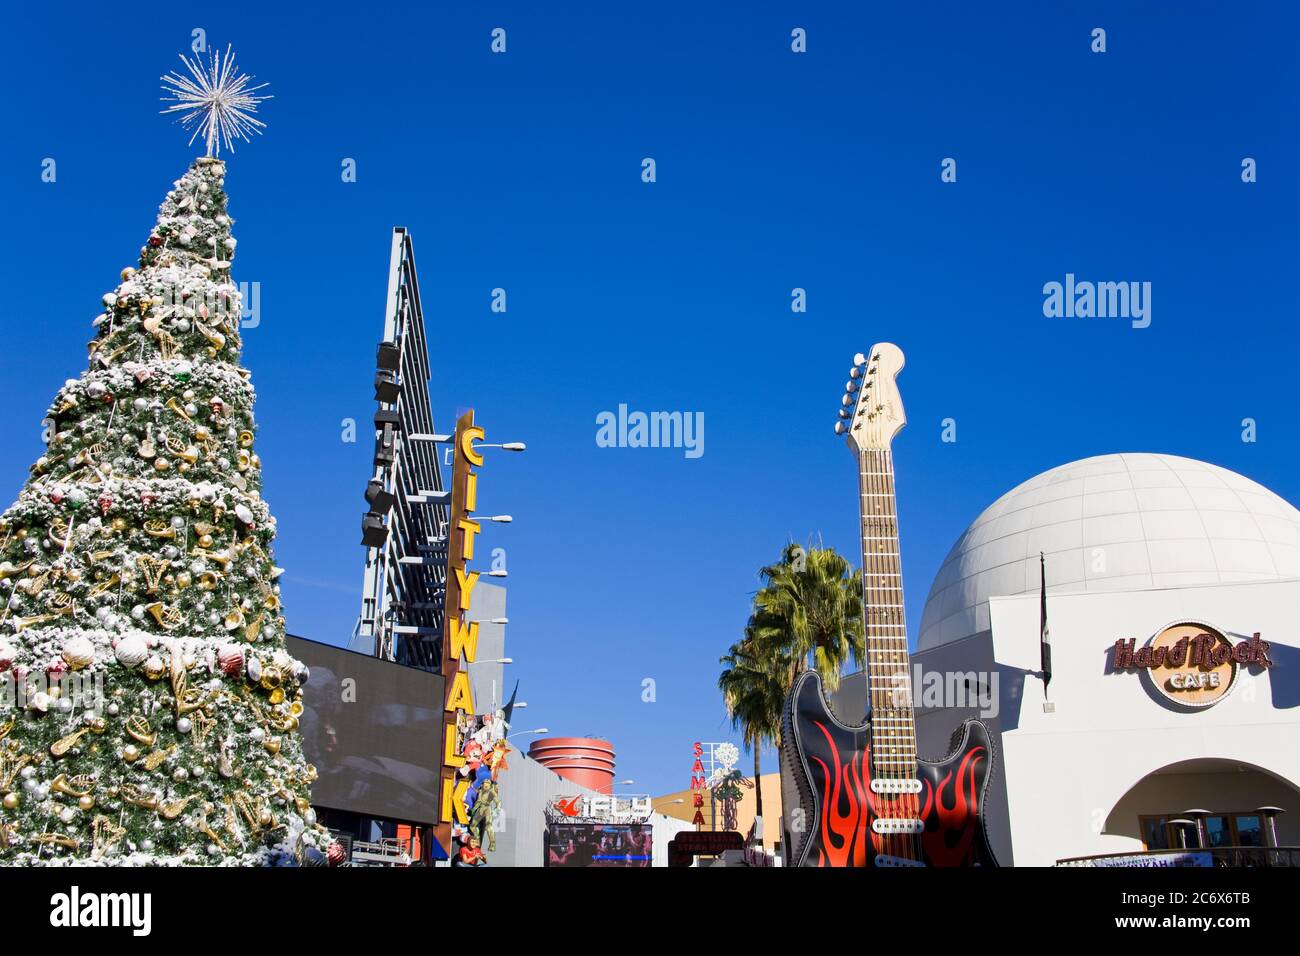 Rbol De Navidad En Citywalk Mall Universal Studios Hollywood Los Angeles California Estados